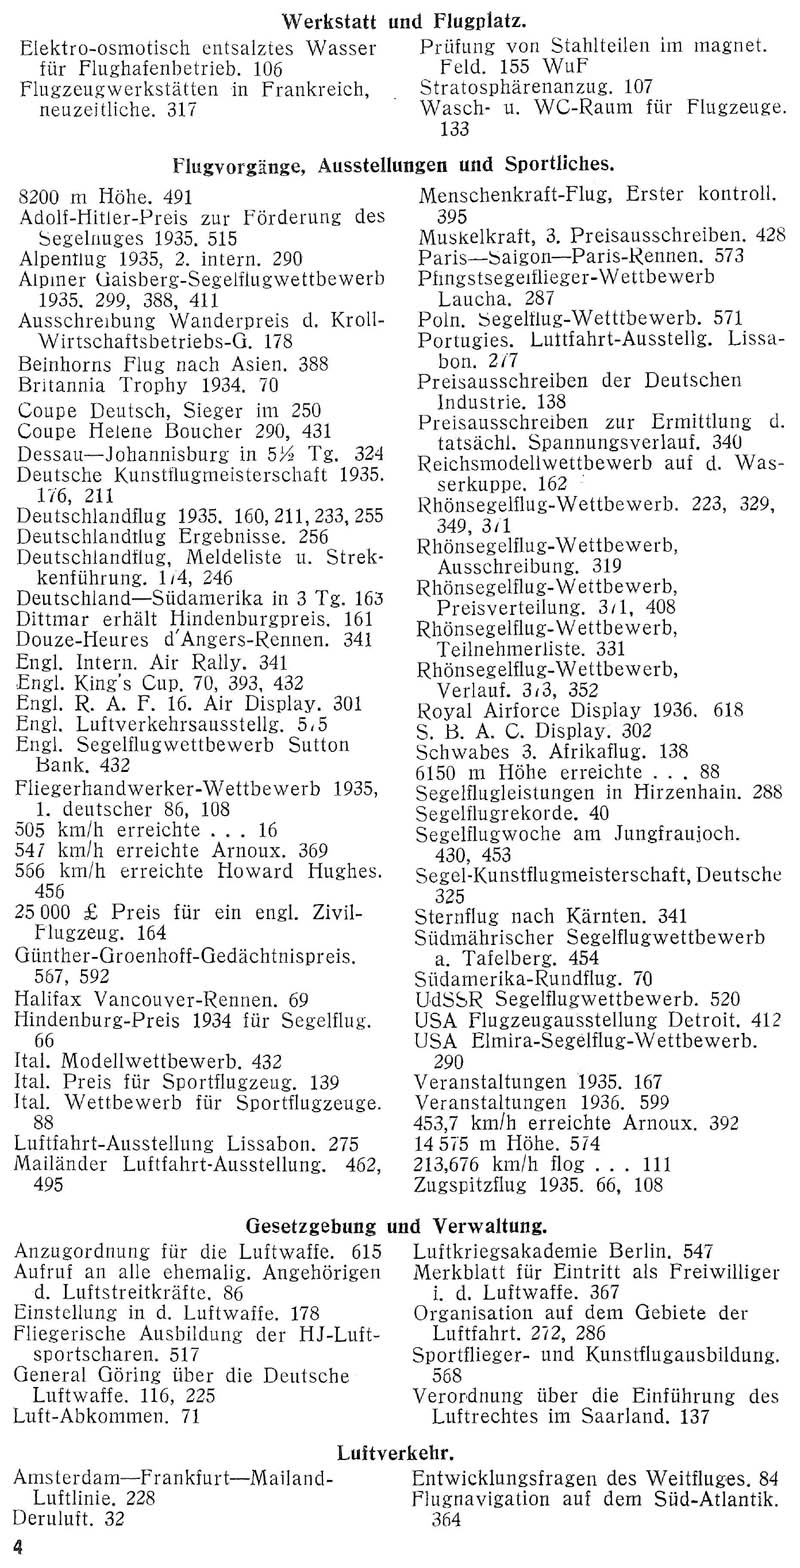 Sachregister und Inhaltsverzeichnis der Zeitschrift Flugsport für das Jahr 1935